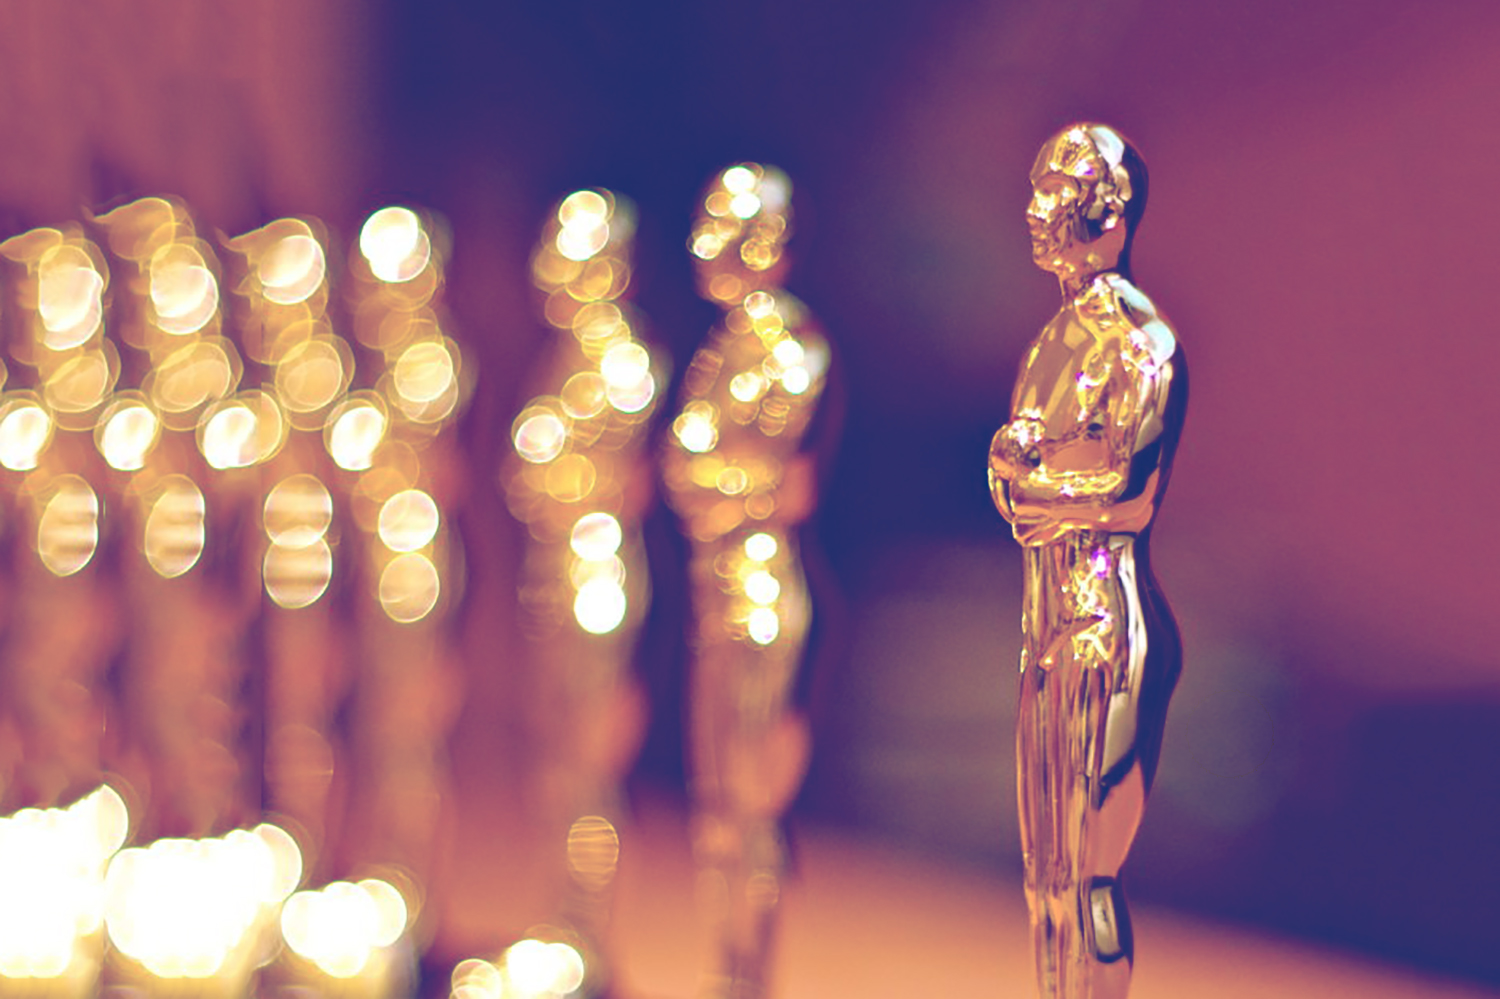 Oscar statues